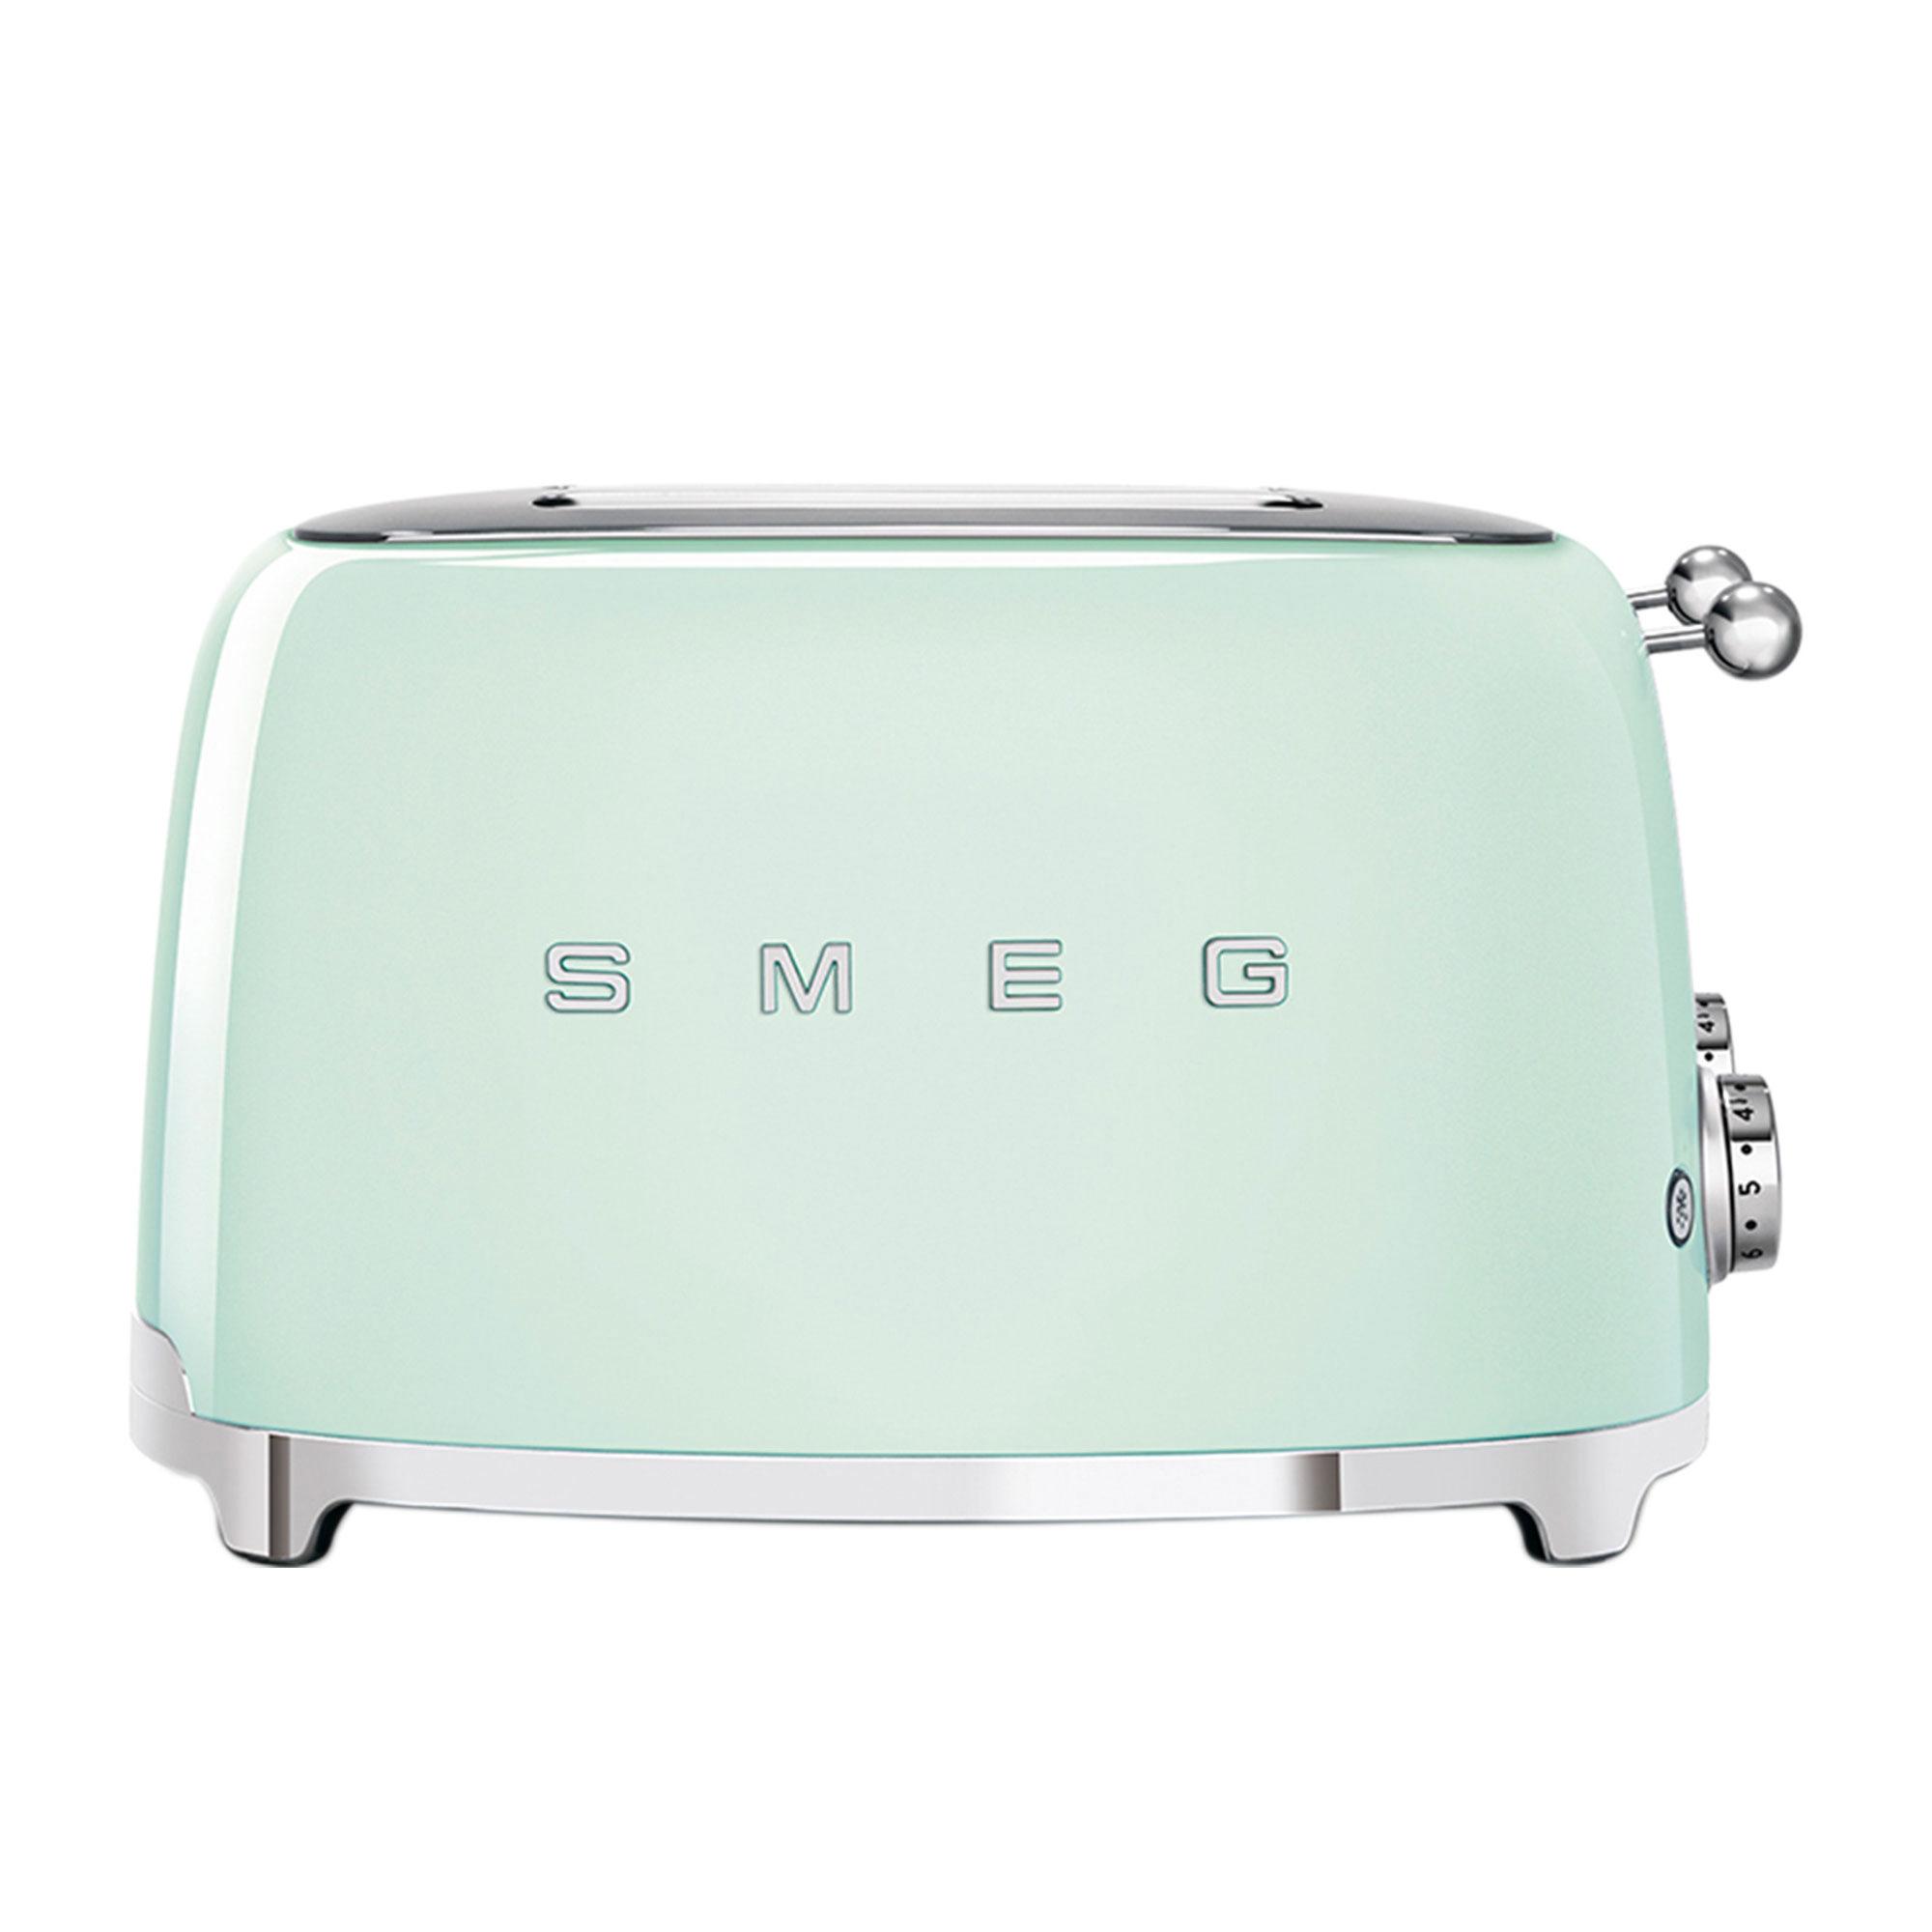 Smeg 50's Retro Style 4 Slot Toaster Pastel Green Image 6